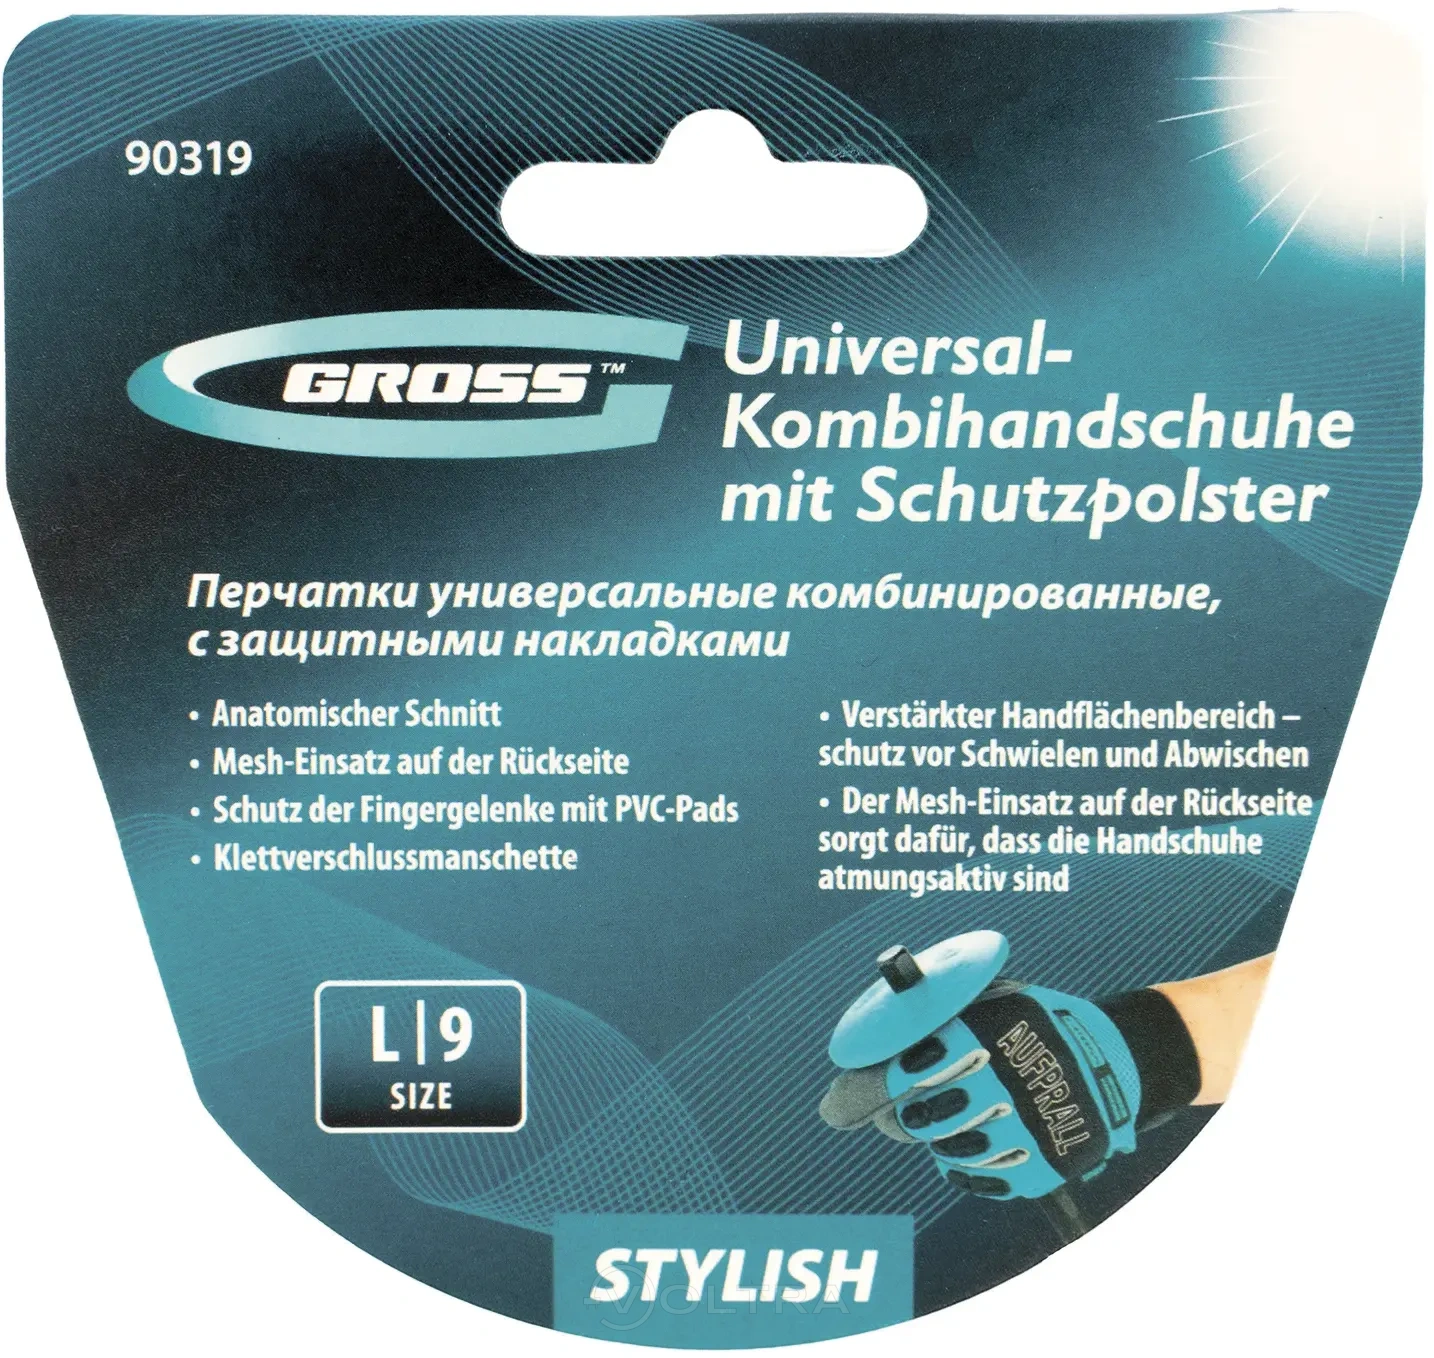 Перчатки универсальные комбинированные с защитными накладками STYLISH размер L (9) Gross (90319)